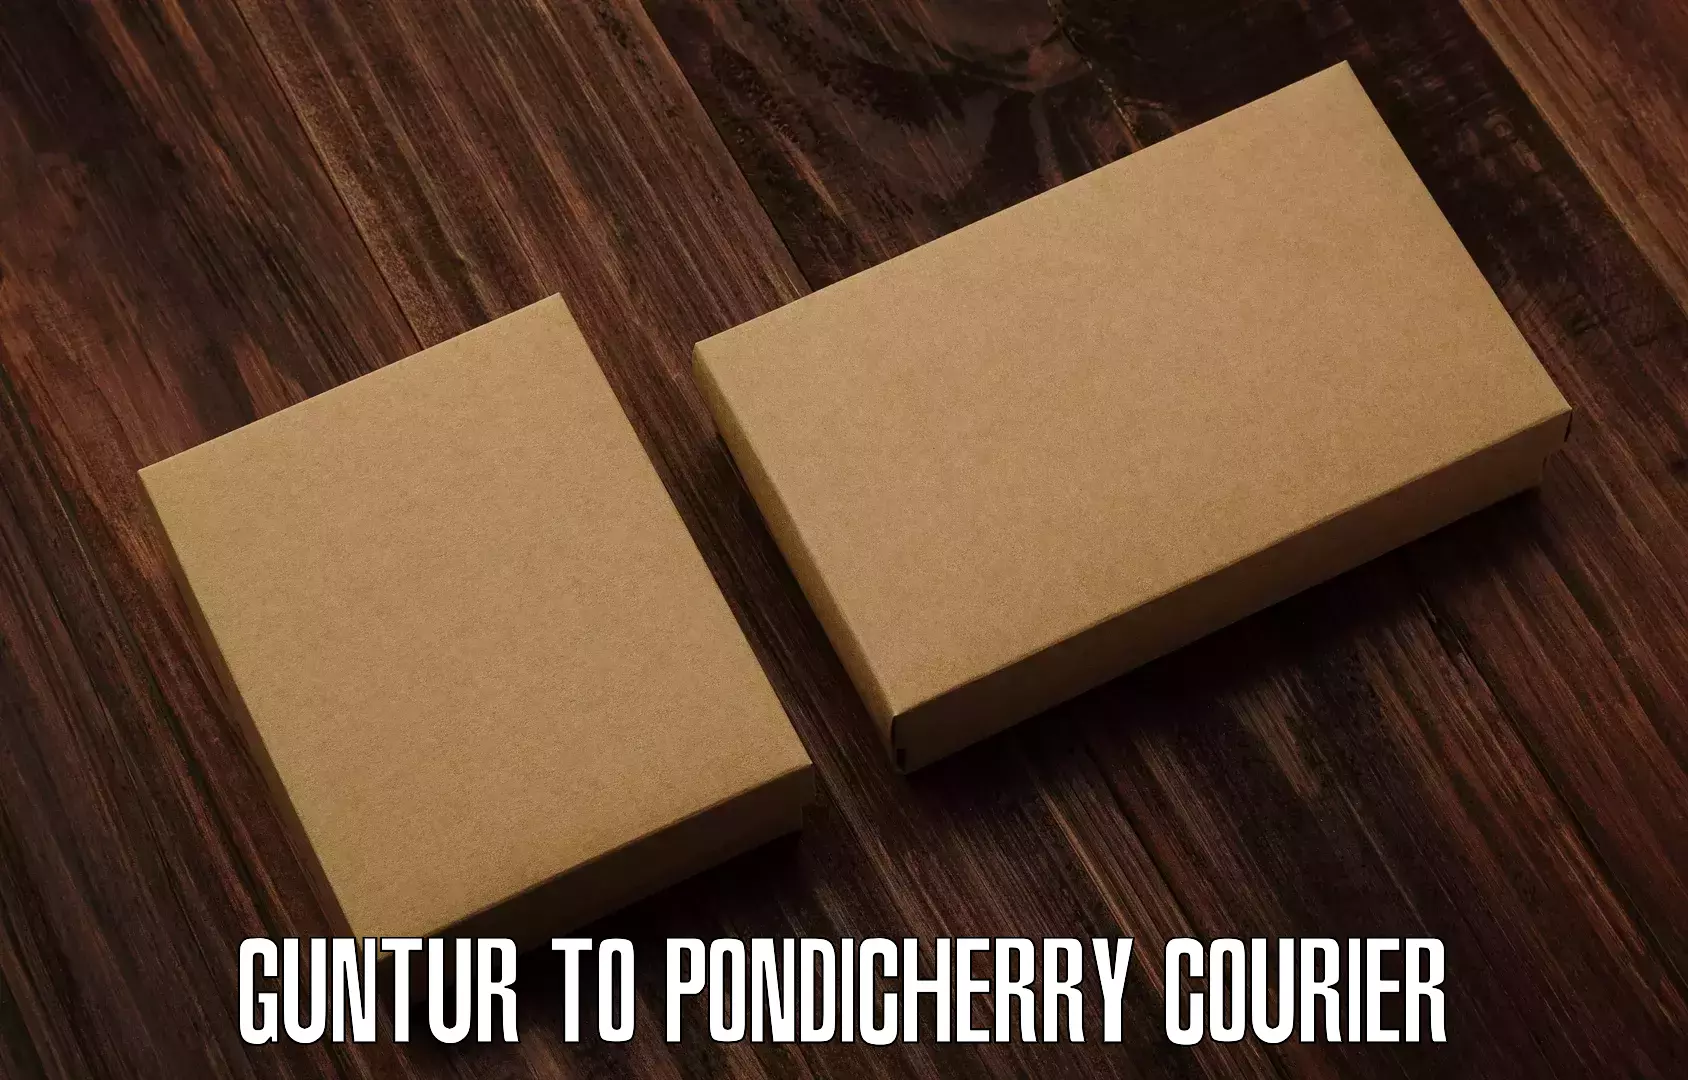 Modern parcel services Guntur to Pondicherry